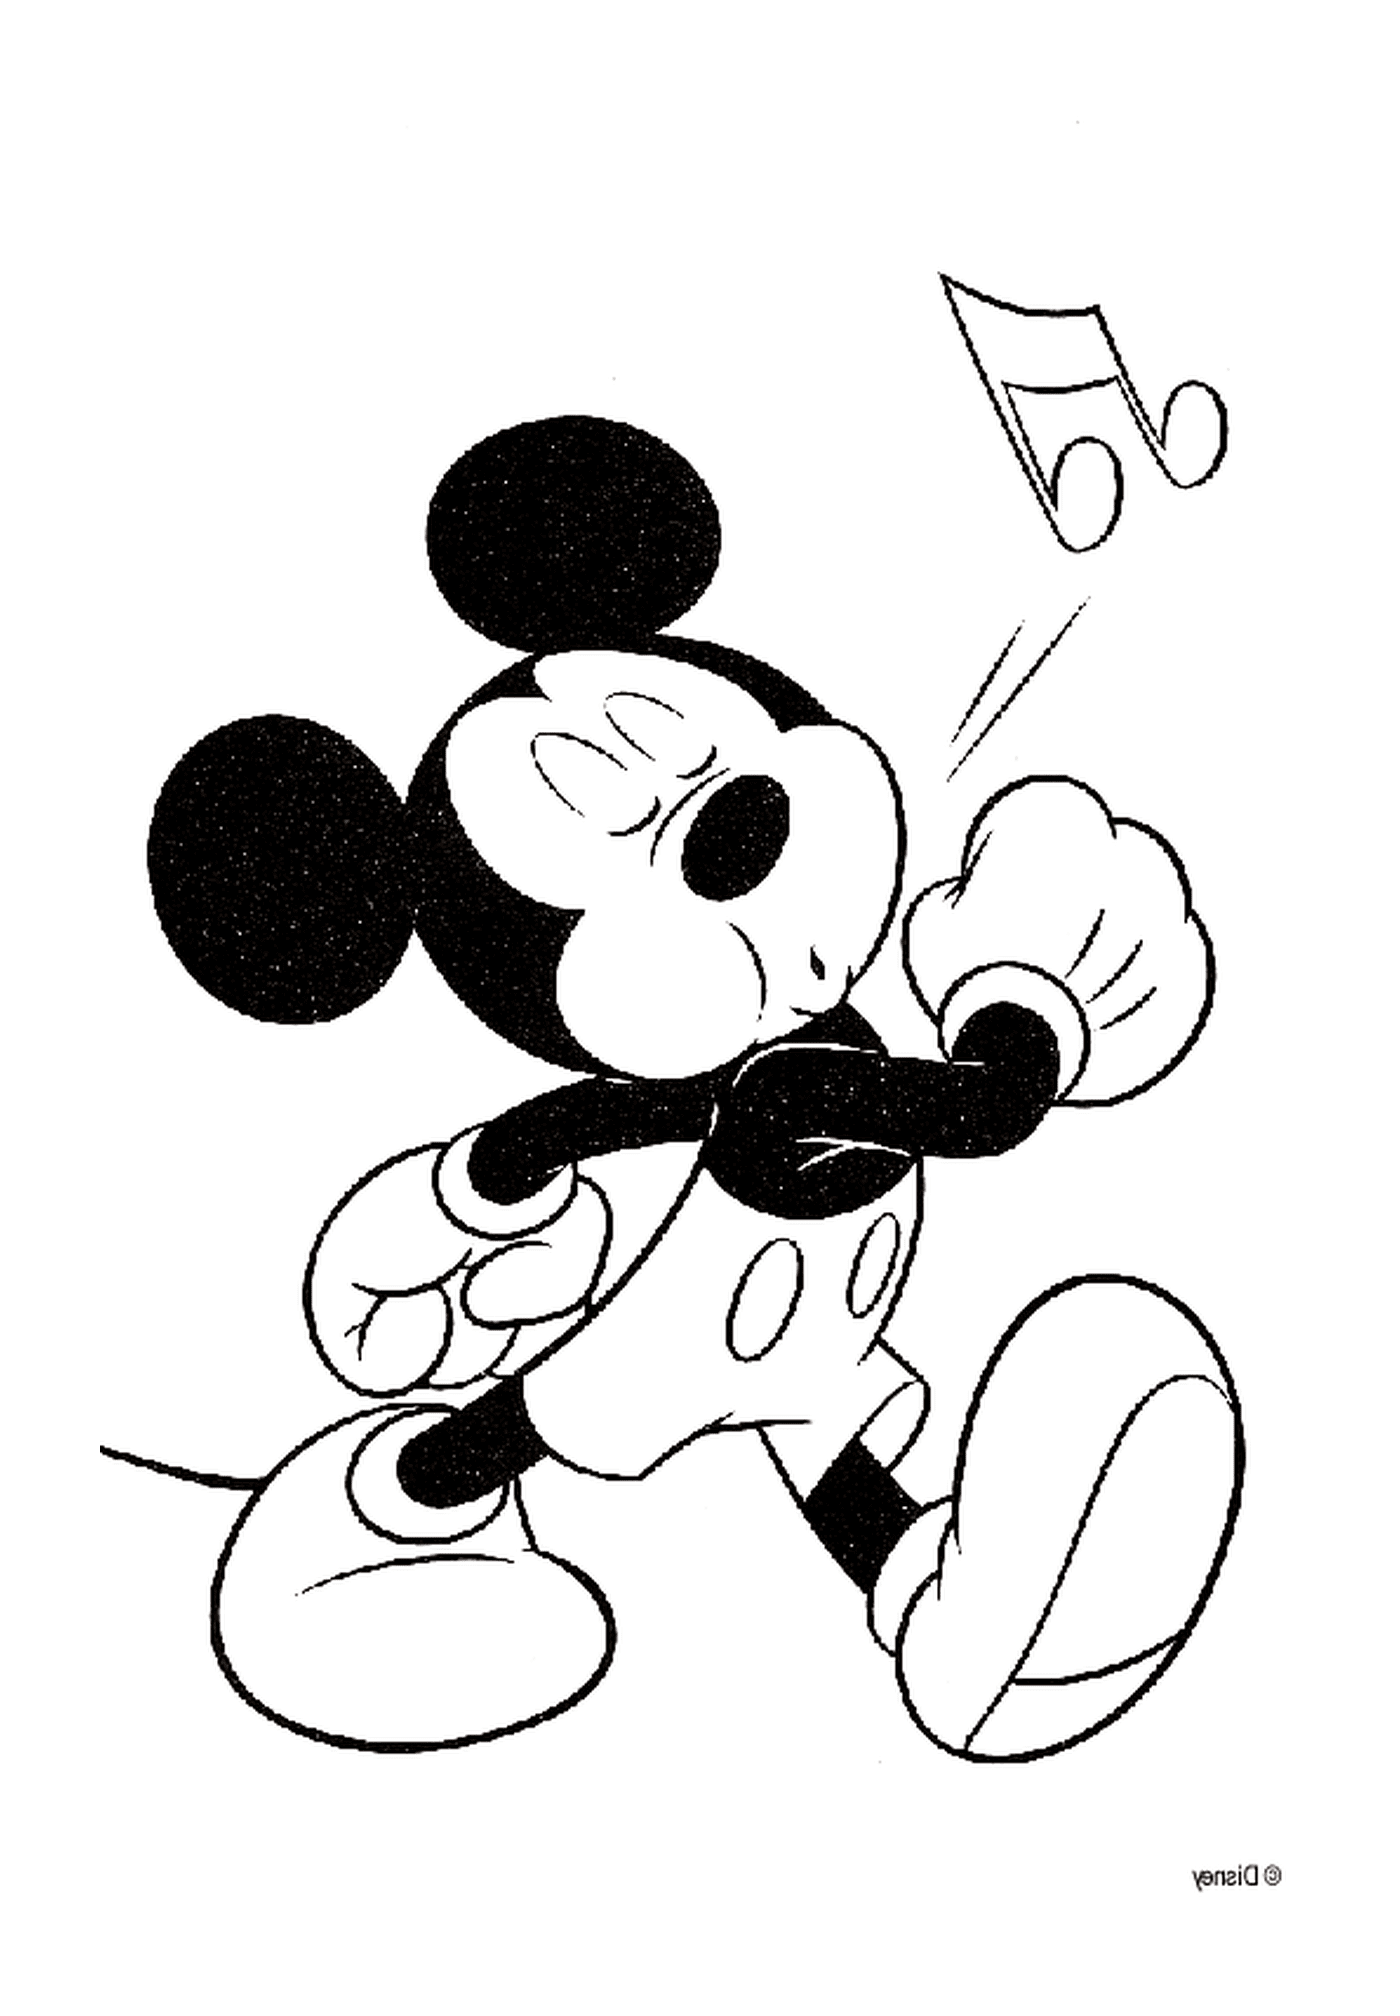   Dessin de Mickey qui siffle 